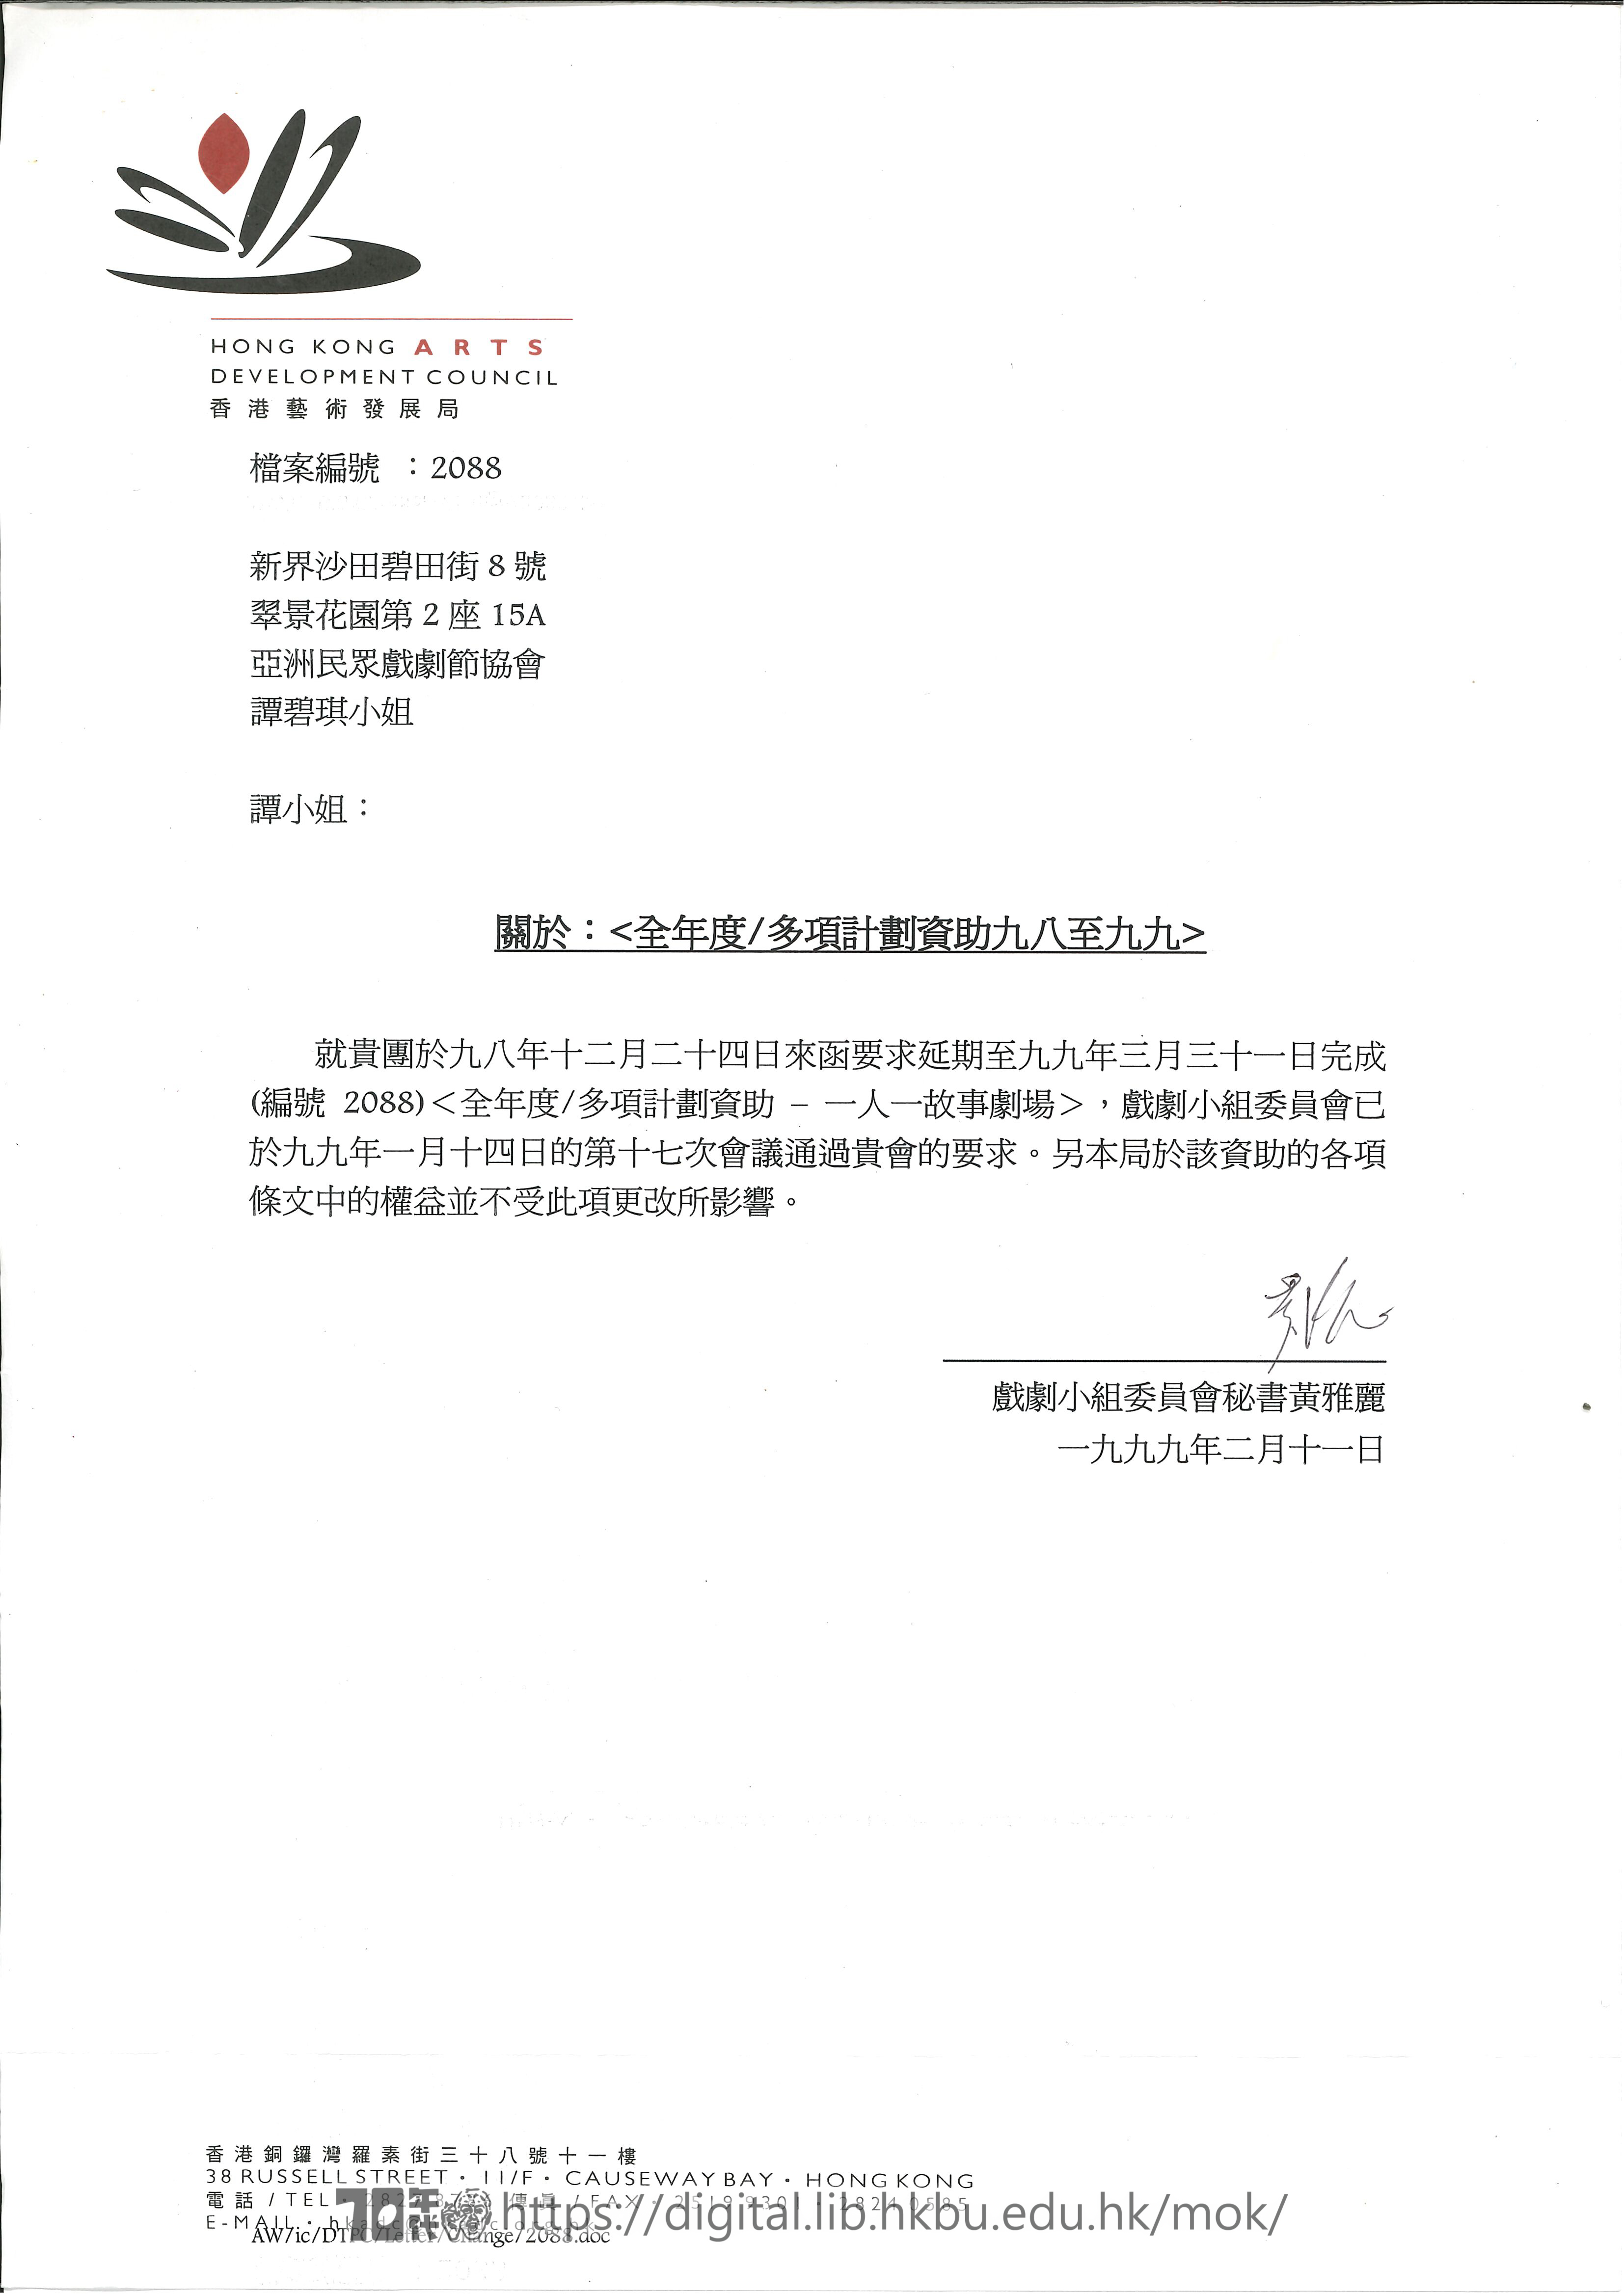 社區劇場  香港藝術發展局資助延期回復信函  